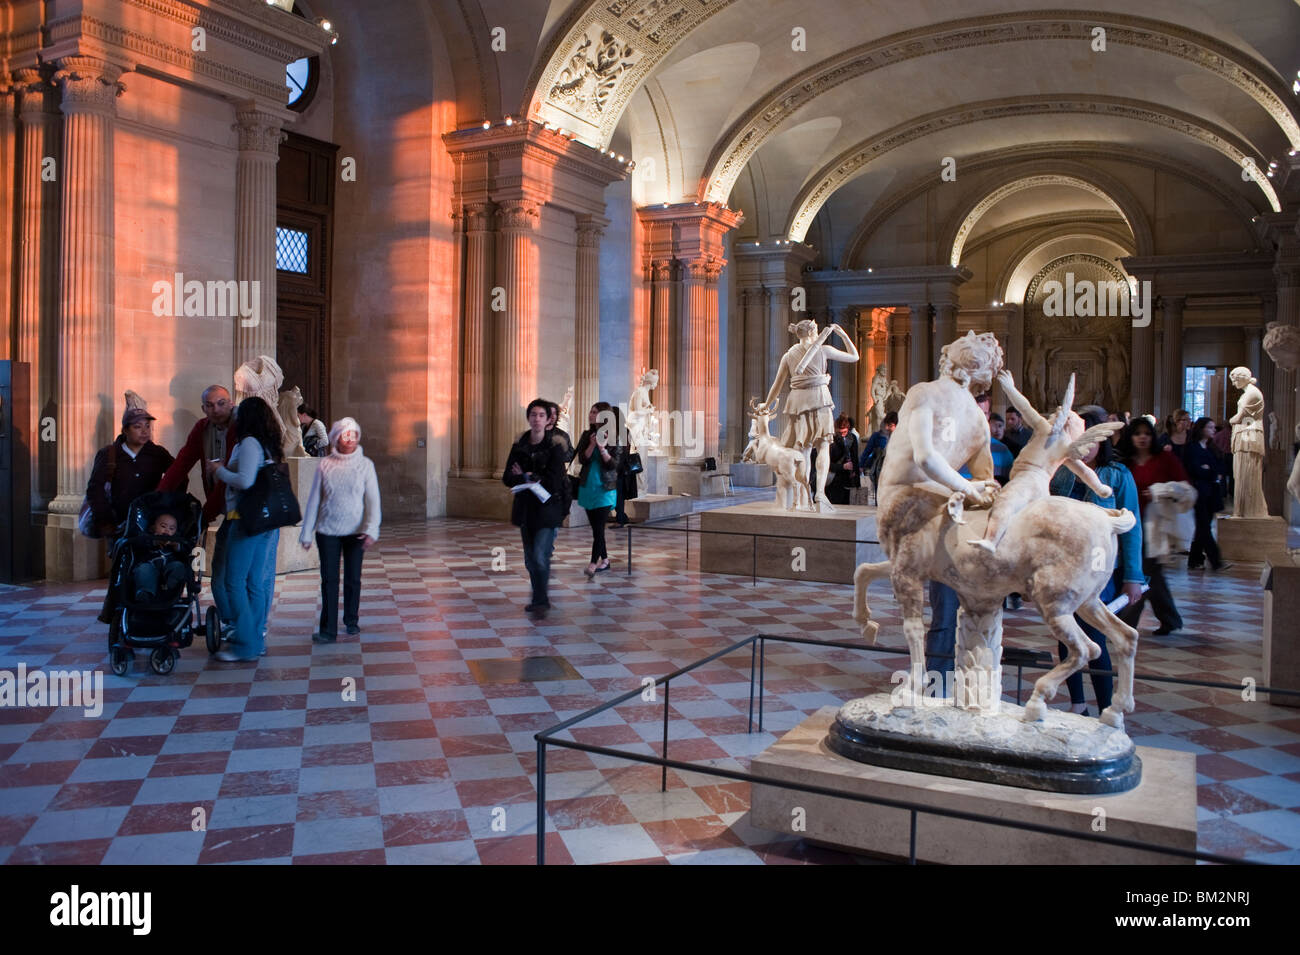 Grande foule de gens, touristes, visite à l'intérieur Galerie d'art, Hall, sculptures romaines, Musée du Louvre, Paris, France, collection de statues Banque D'Images